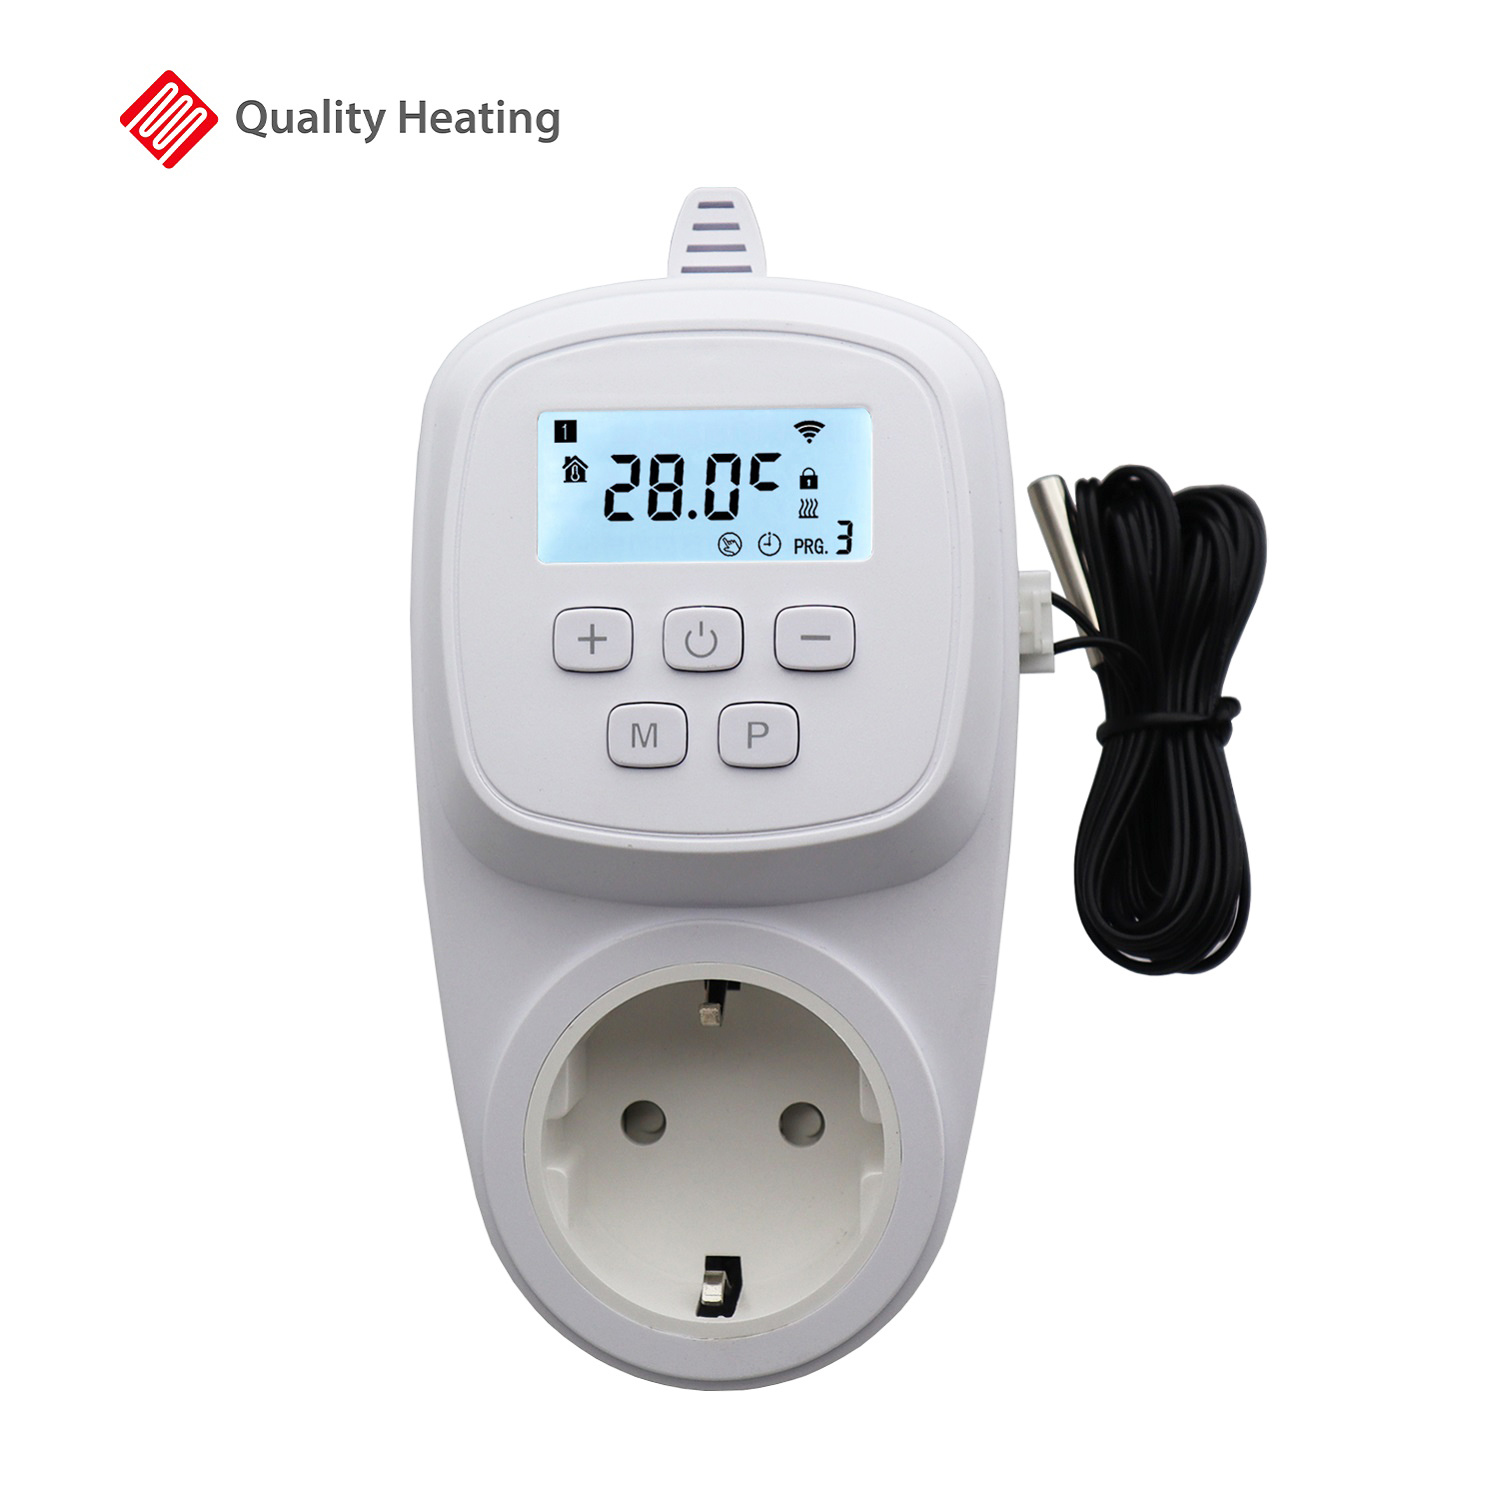 Wifi stopcontact thermostaat losse sensor QH-42 - Infraroodverwarming kopen? Quality Heating Laagste prijsgarantie!